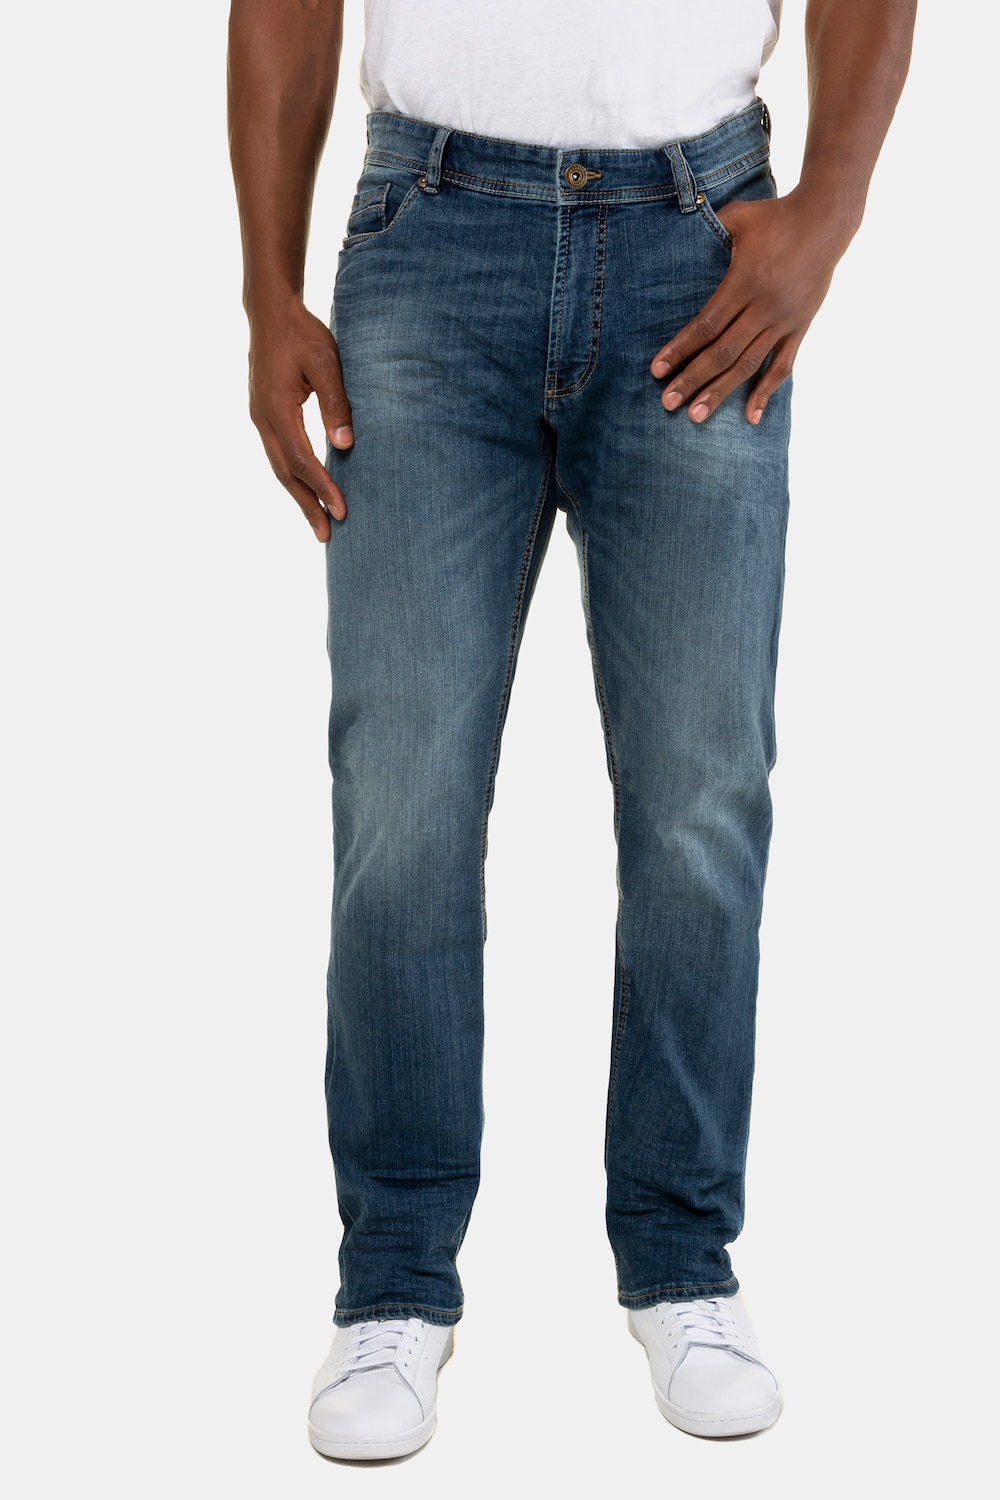 Grote Maten Jeans, Heren, blauw, Maat: 29, Katoen, JP1880